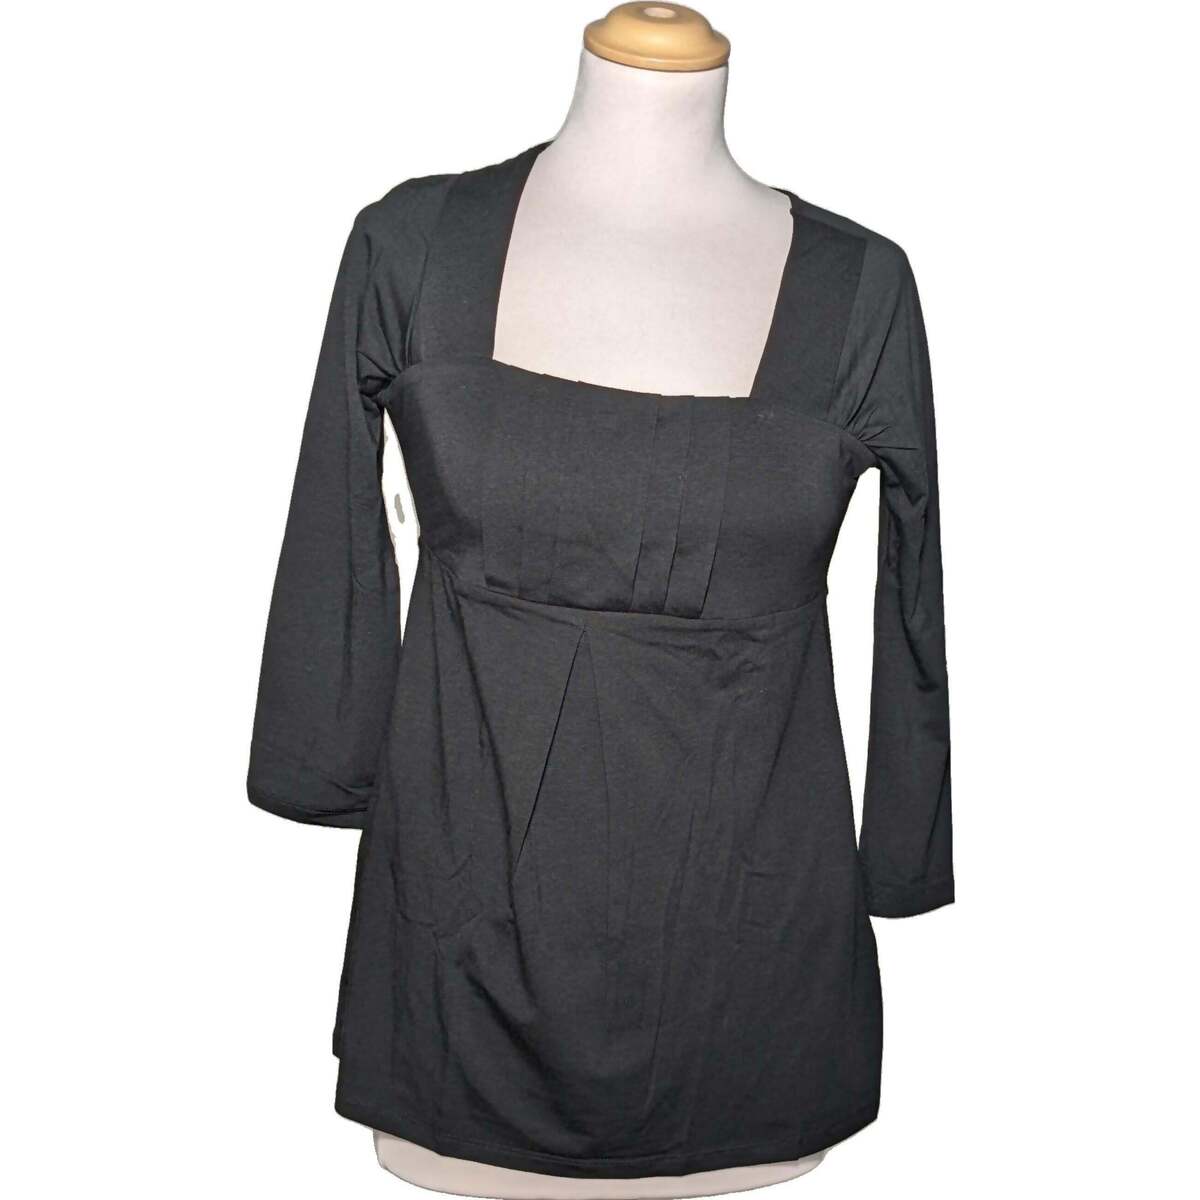 Vêtements Femme T-shirt molto traspirante top manches longues  36 - T1 - S Noir Noir